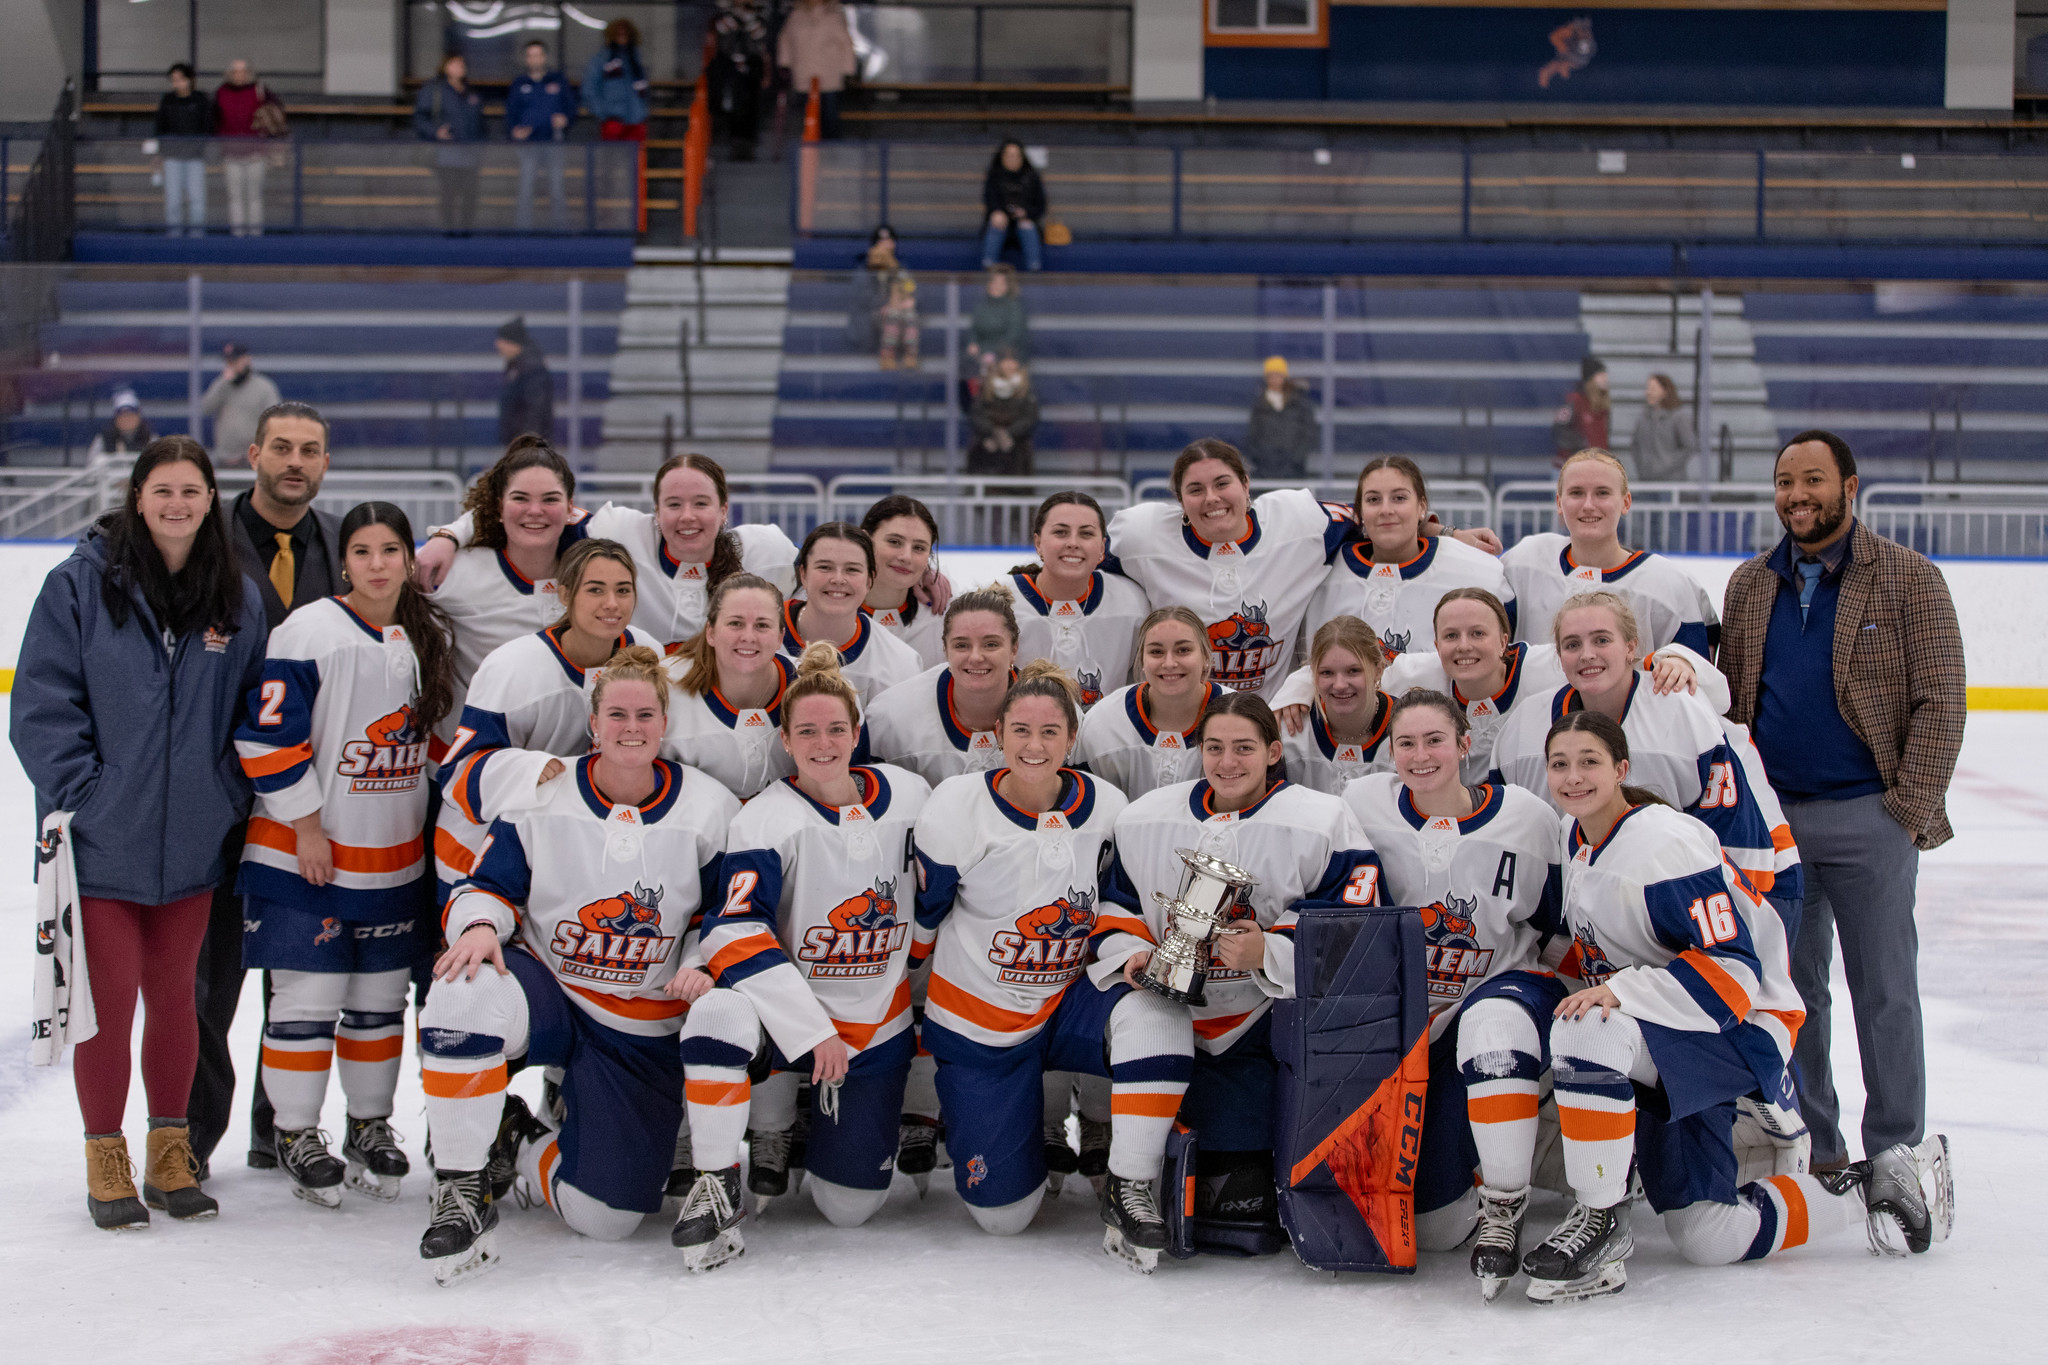 Women's hockey team photo